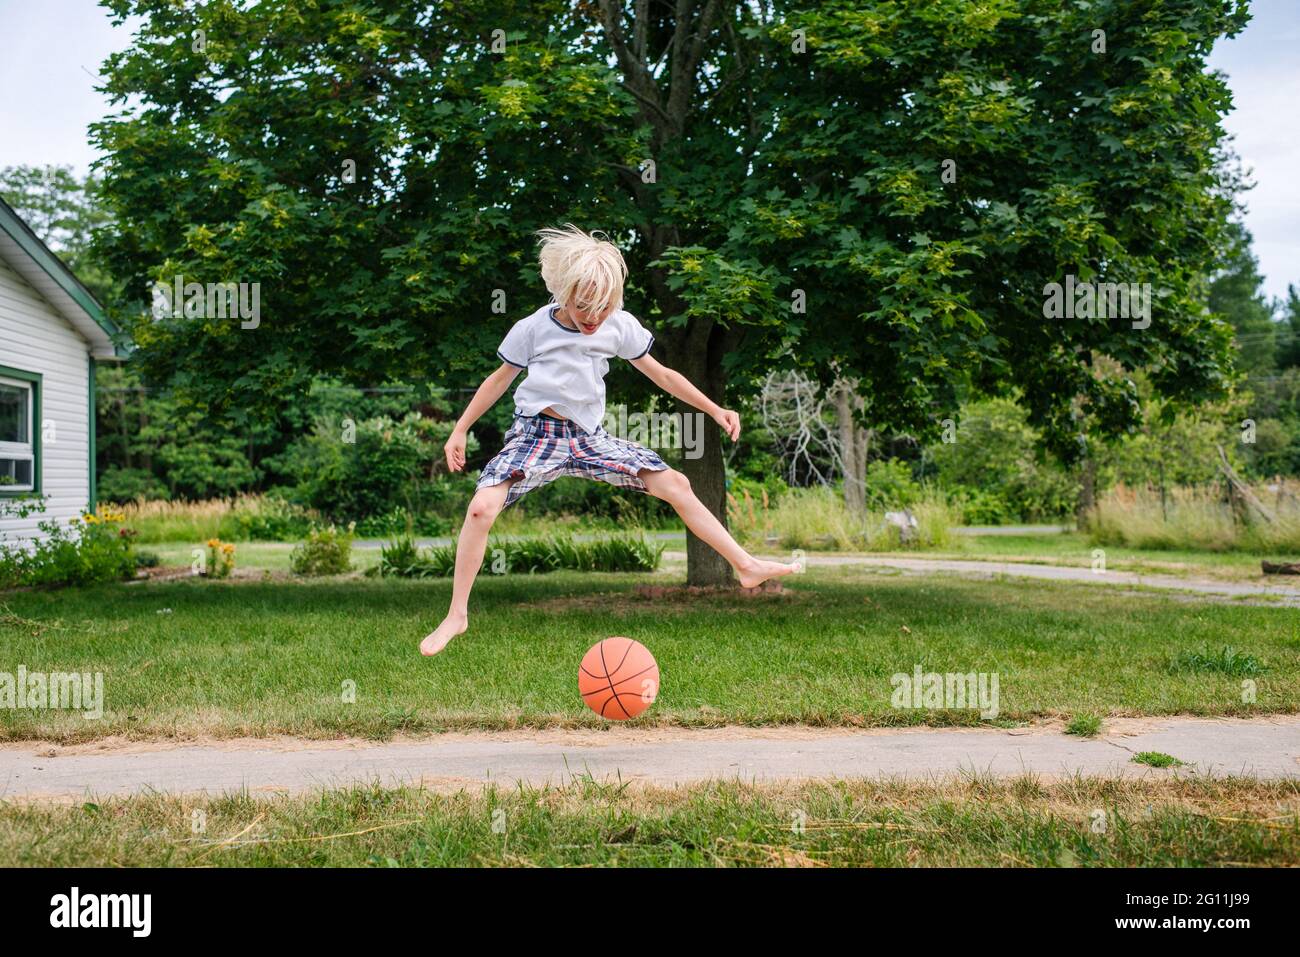 Canada, Ontario, Boy jumping over basketball ball outdoors Stock Photo